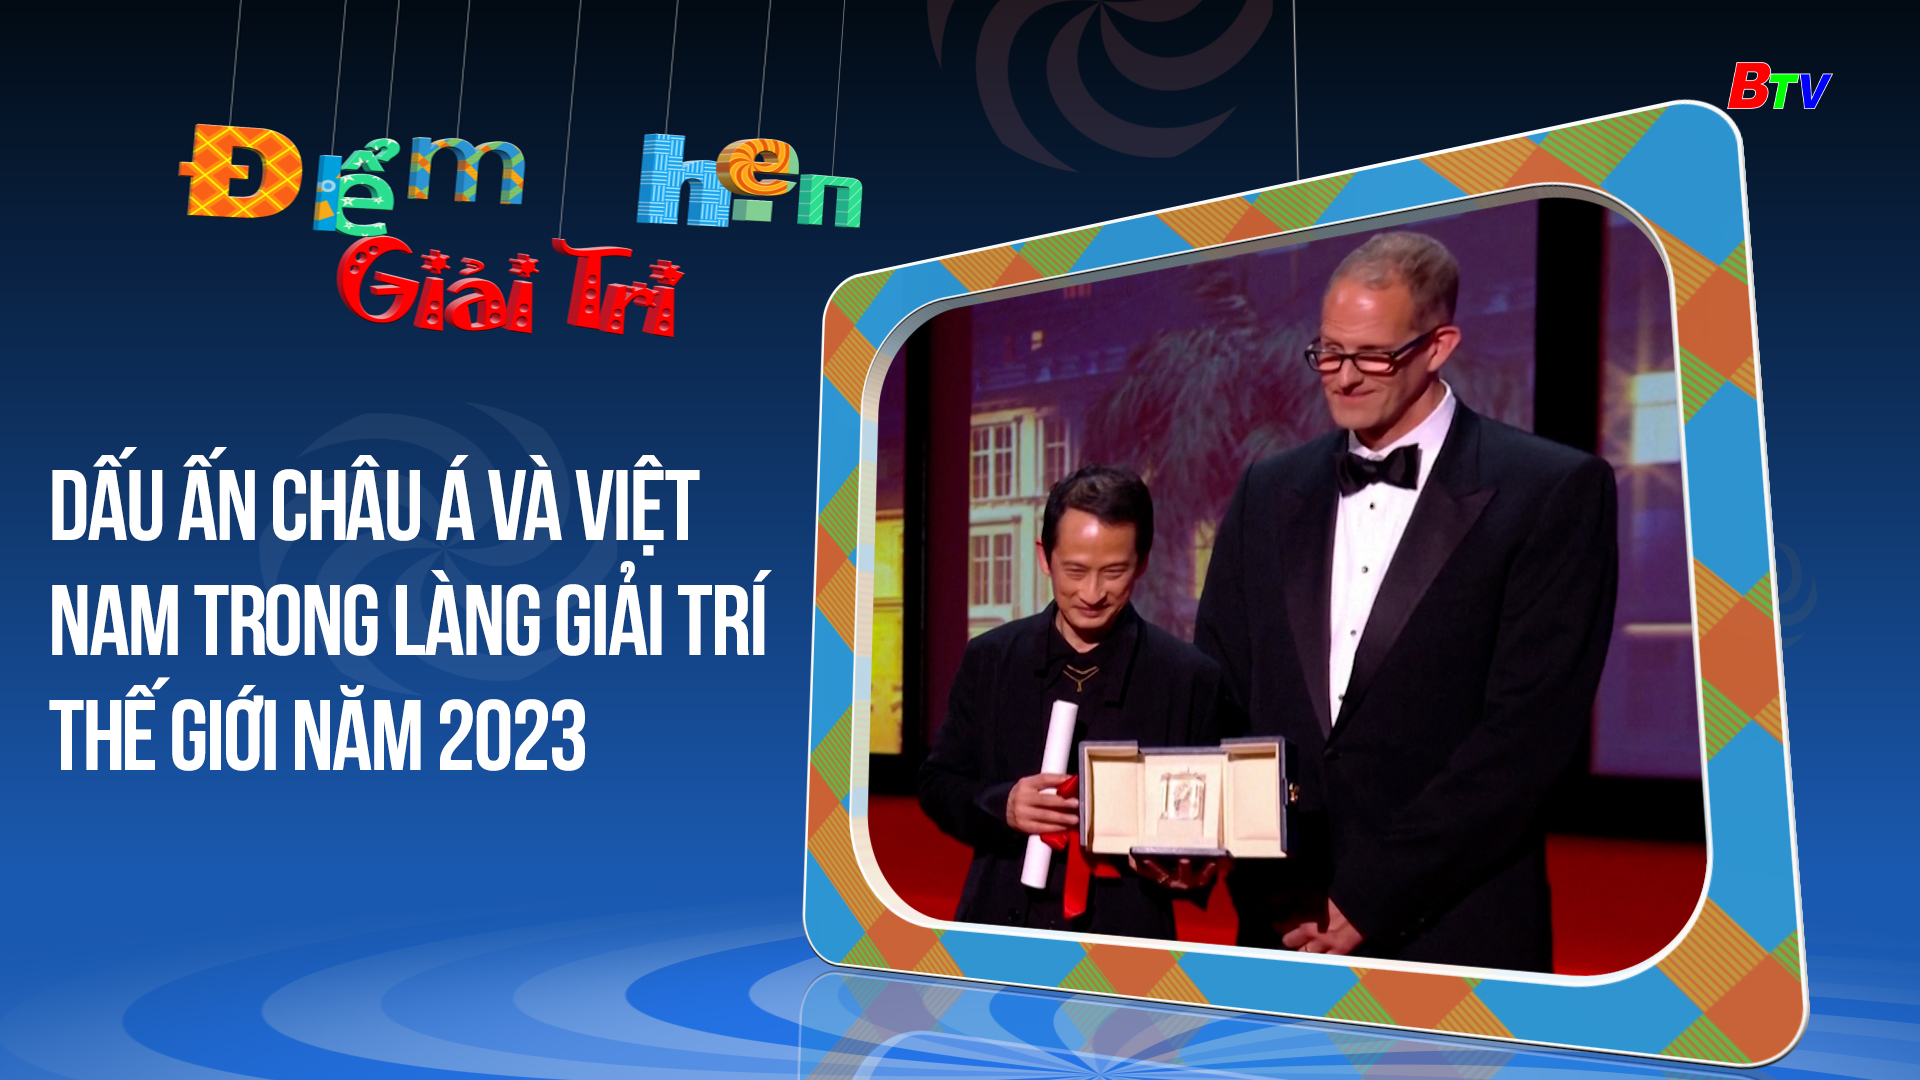 Dấu ấn Châu Á và Việt Nam trong làng giải trí thế giới năm 2023 | Điểm hẹn giải trí | 11/2/2024